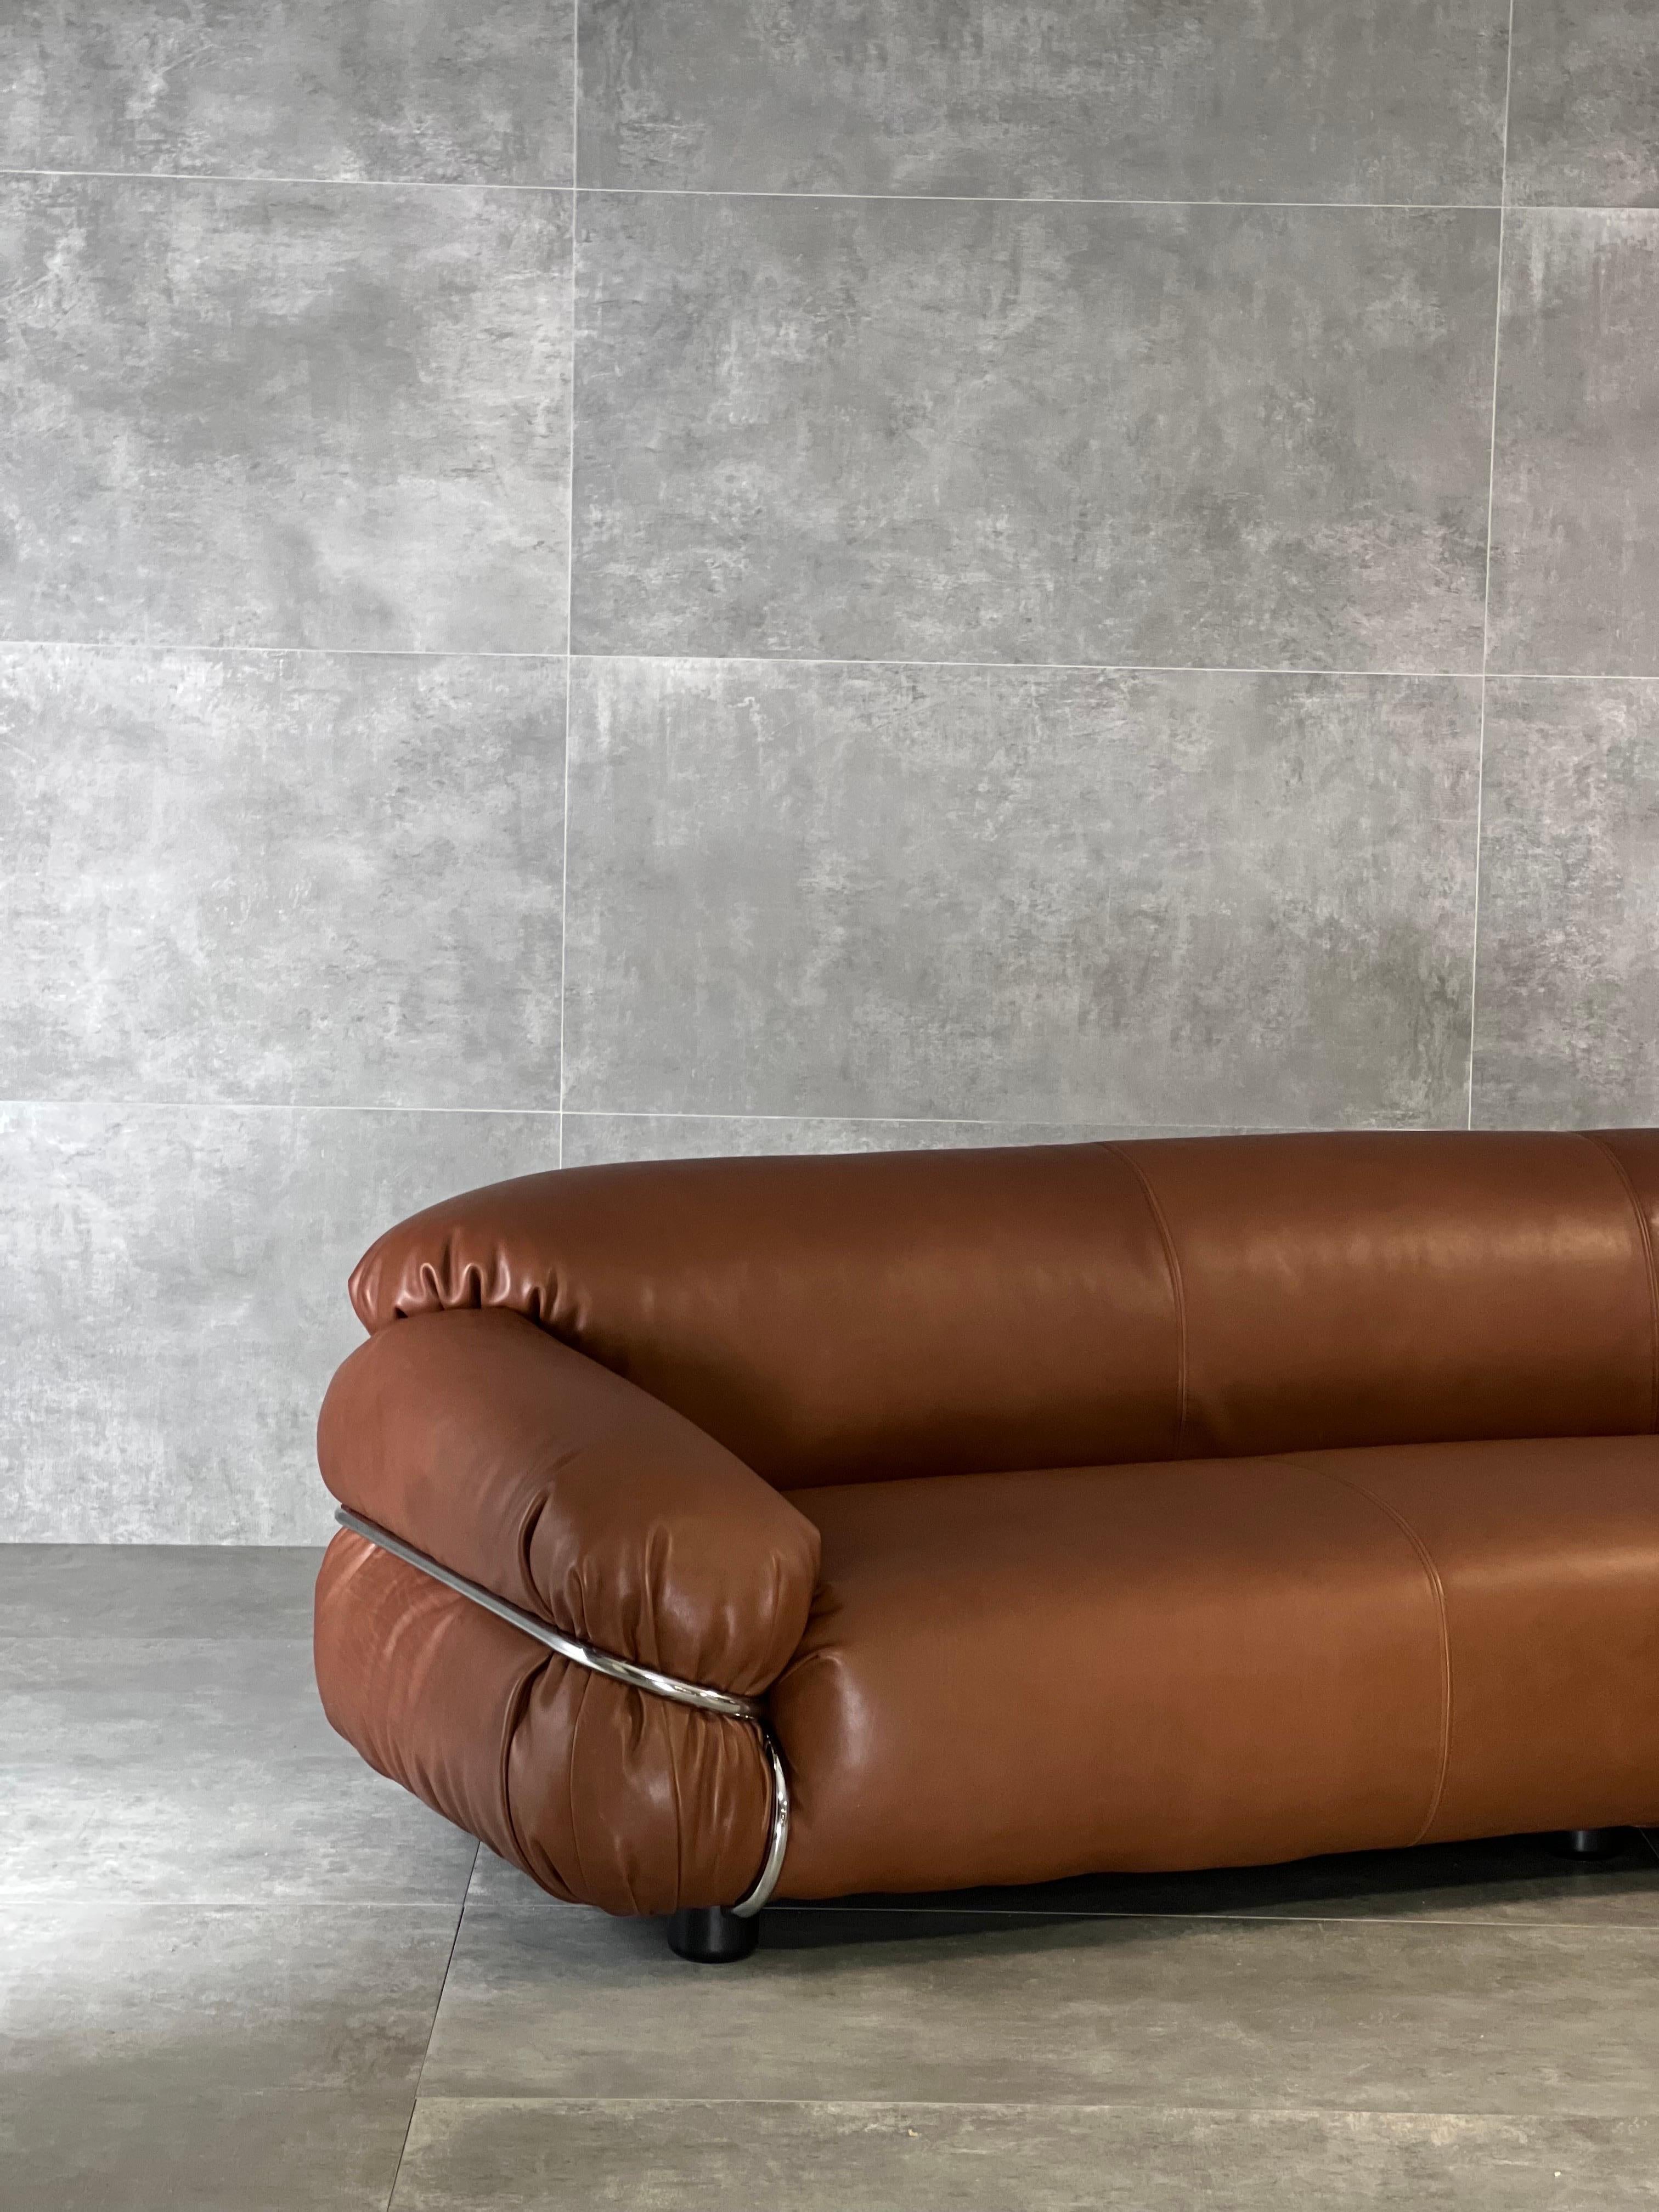 Dreisitziges Sofa, entworfen von Gianfranco Frattini und hergestellt von Cassina in Italien in den 1970er Jahren. Dieses Sofa wurde mit braunem, hochwertigem Leder neu bezogen und hat sein originales Etikett auf dem Sockel. 